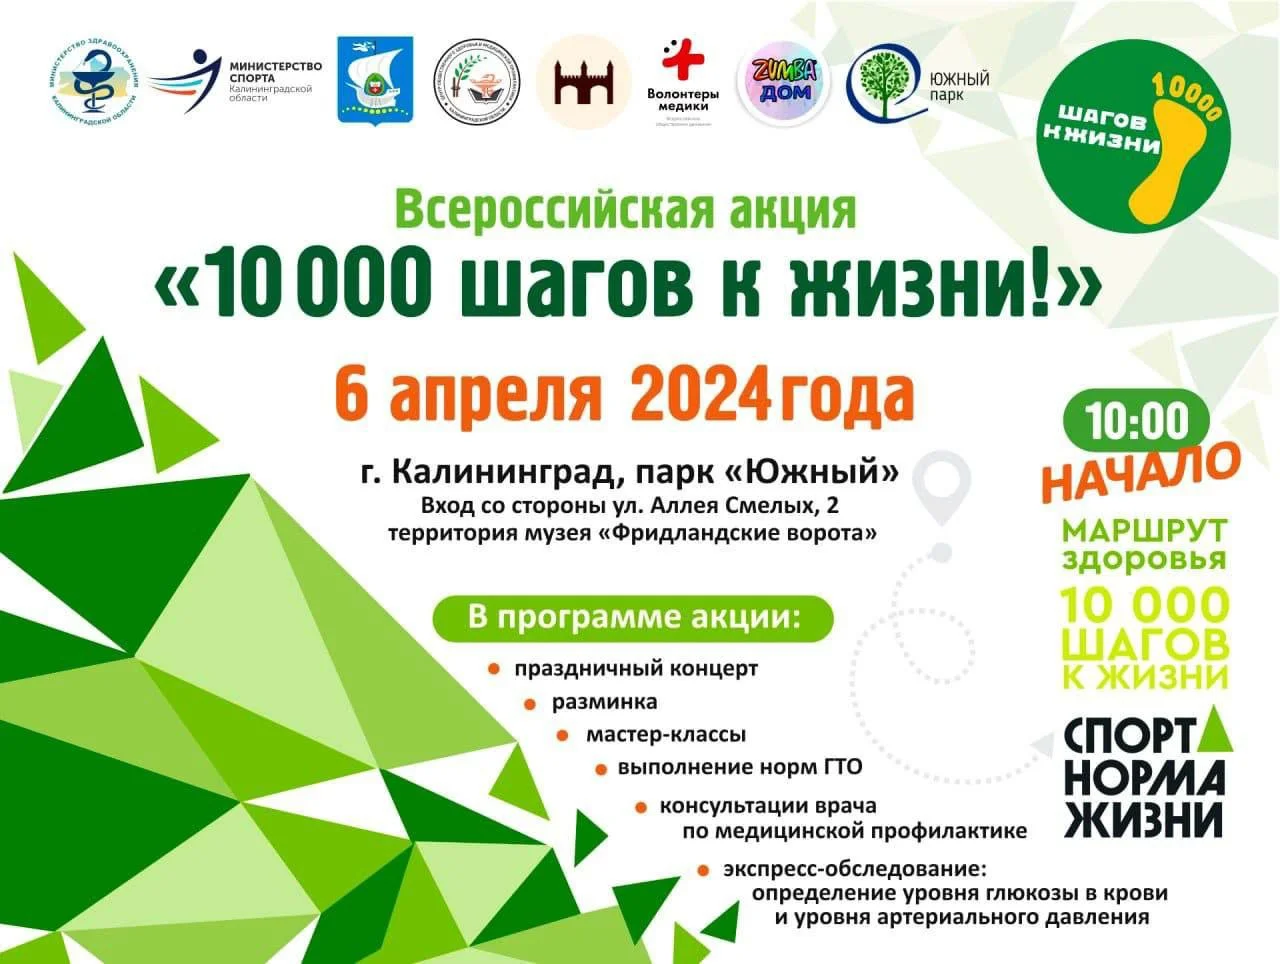 Всероссийская акция «10 000 шагов к жизни!»